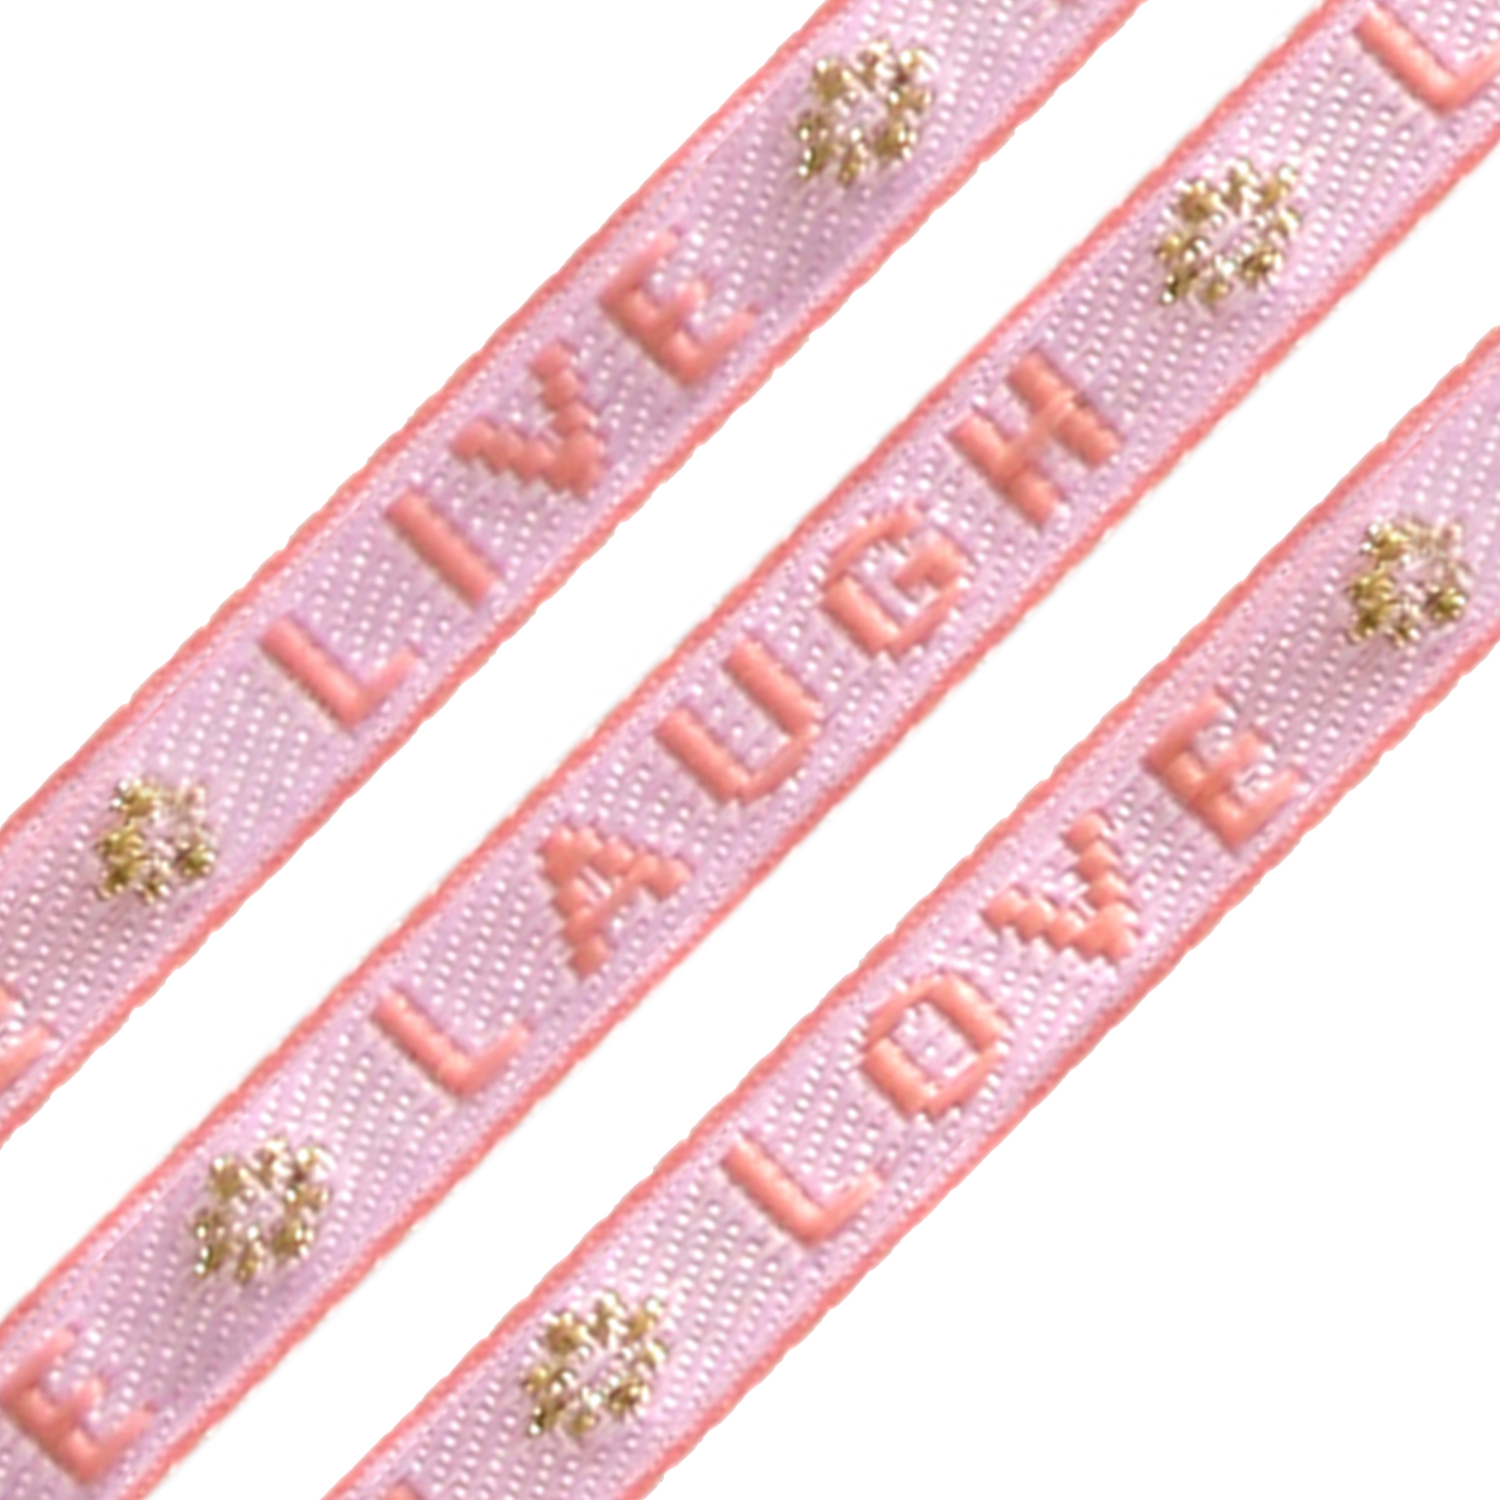 Festival lint – Live laugh love, 10mm, Roze/Goud, 1 m